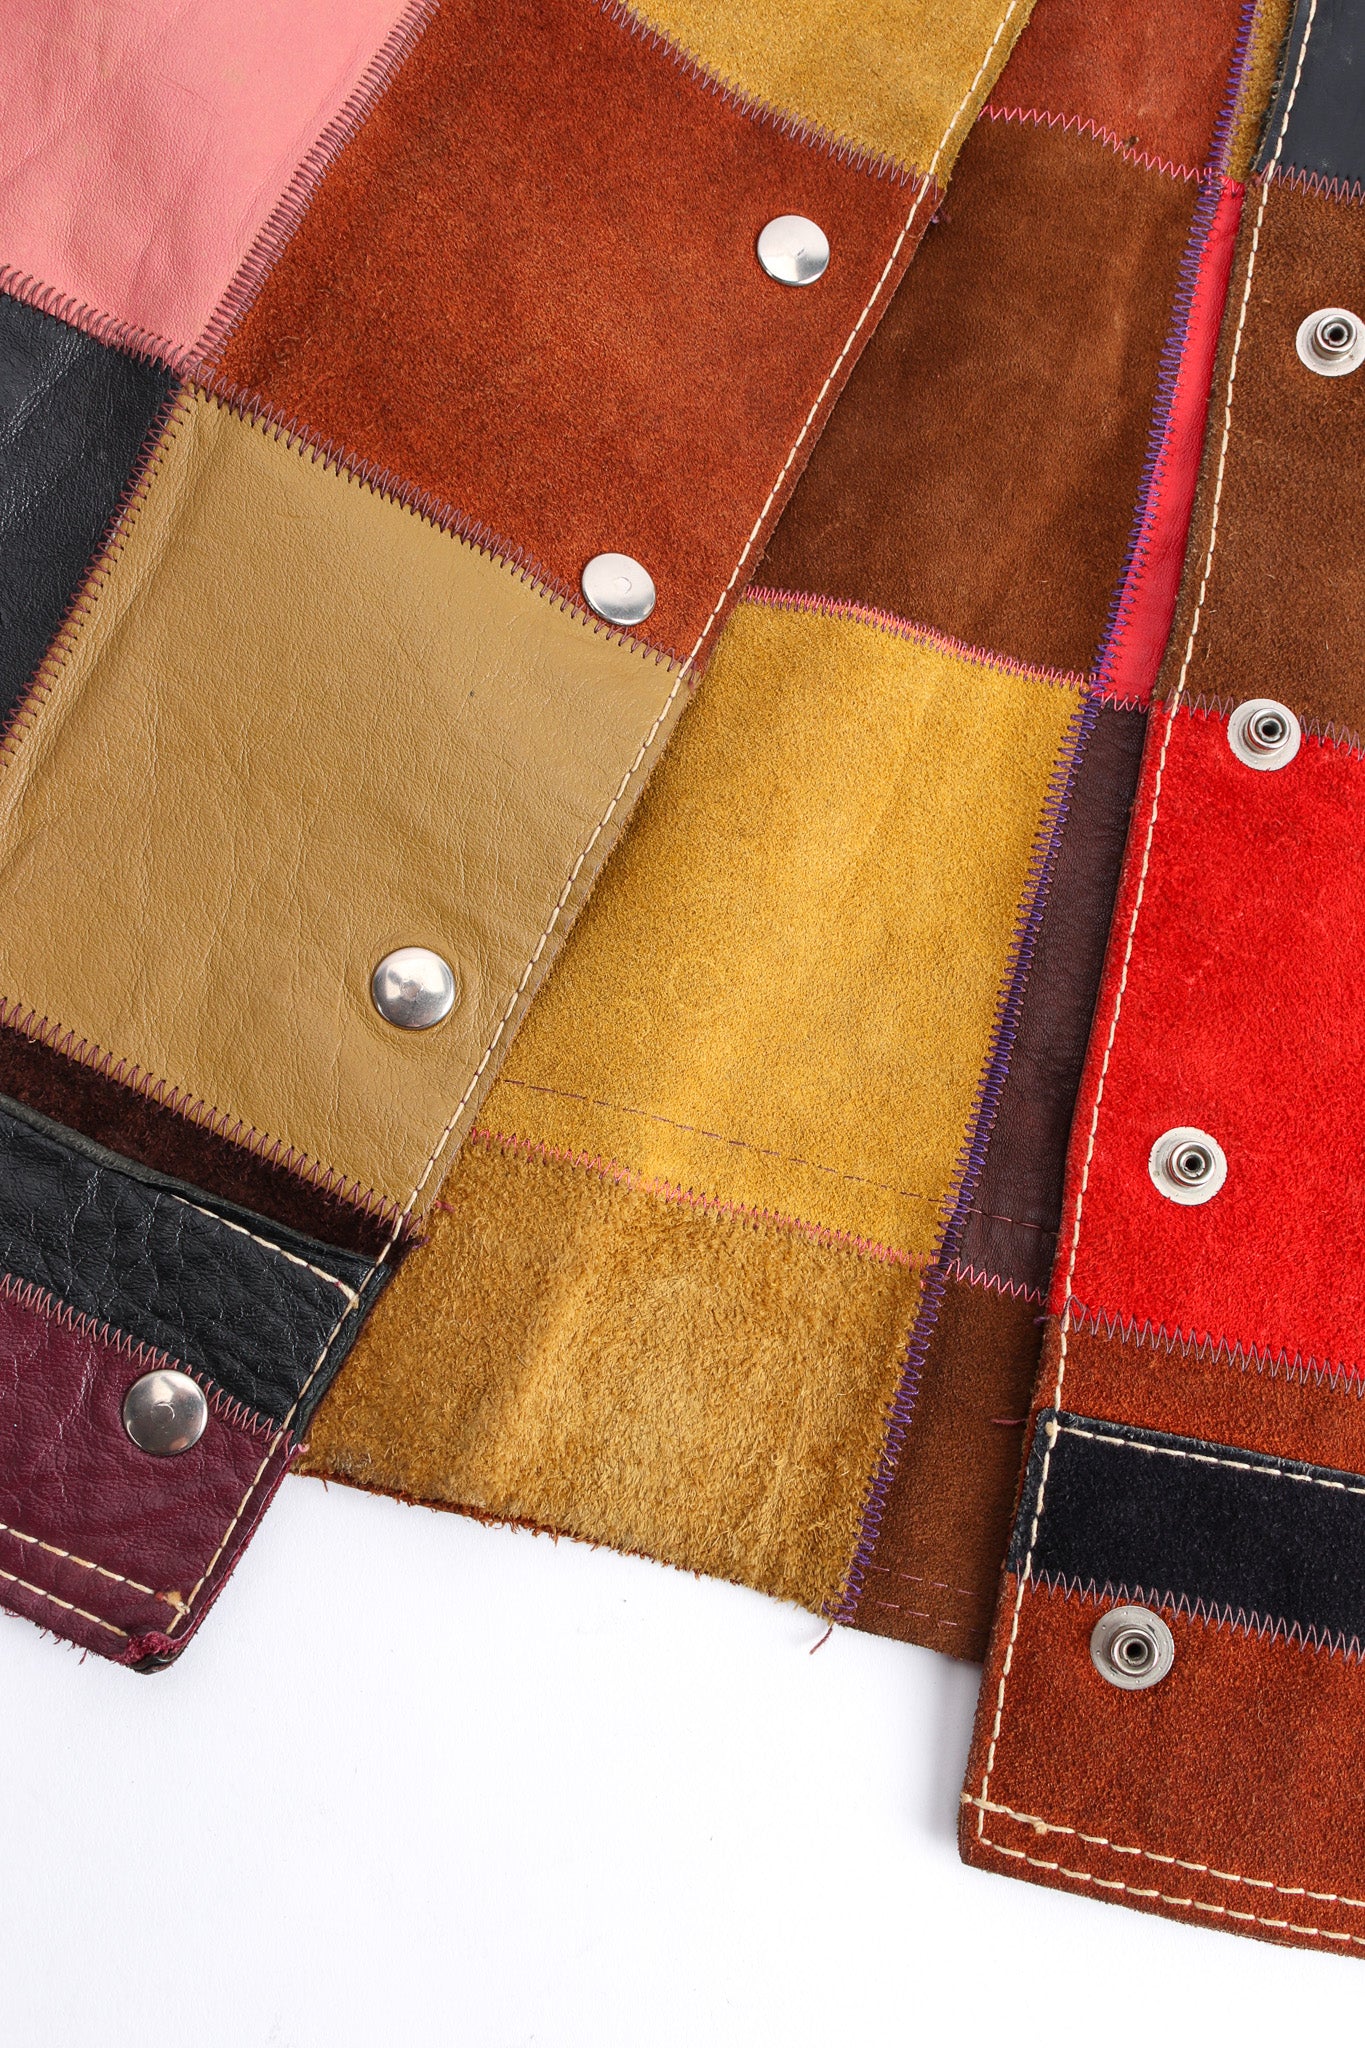 Vintage Mixed Leather Patchwork Jacket hem/patchwork close up @ Recess LA